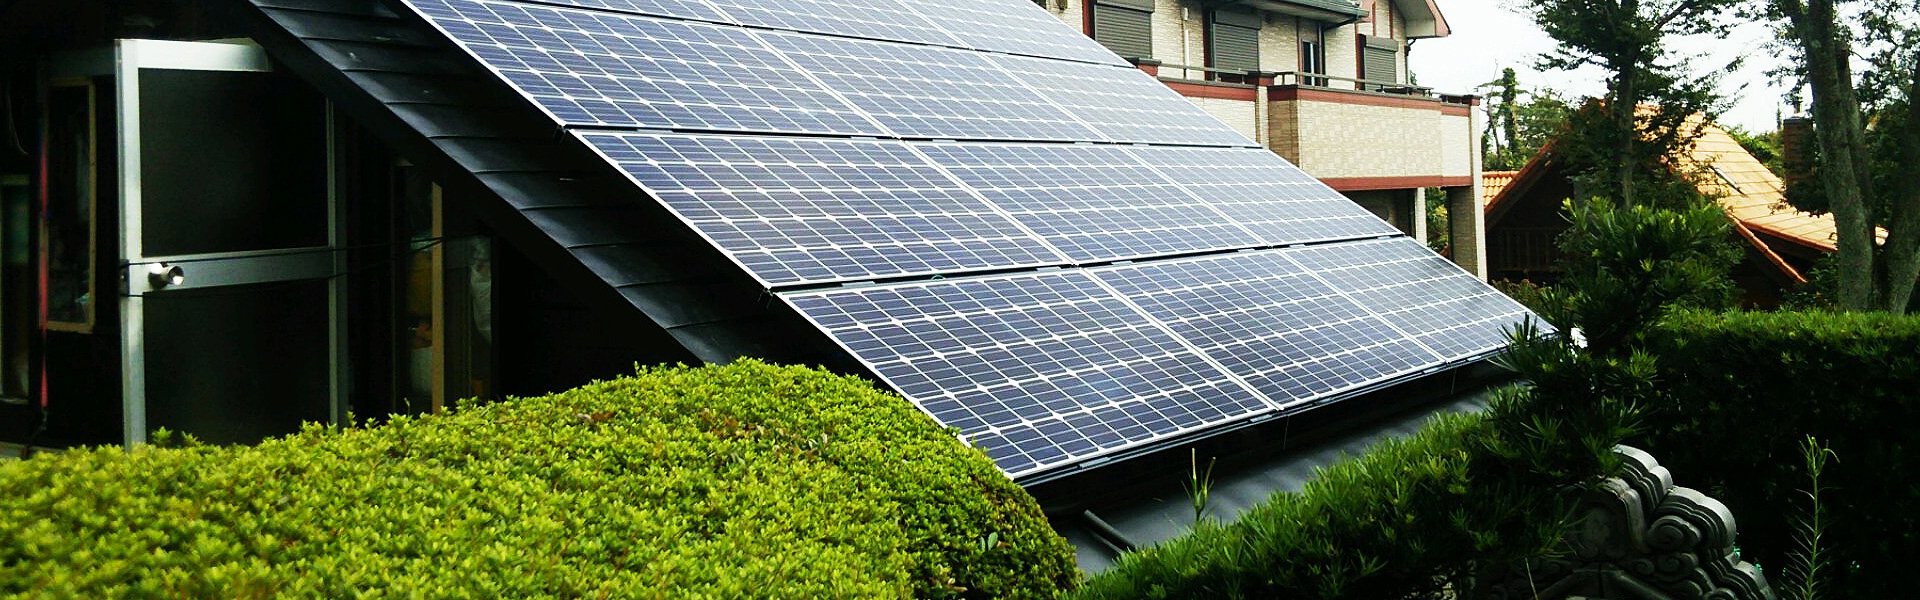 太陽光発電なら岐阜県下三菱電器仕入れ率トップのＳＥＣネット